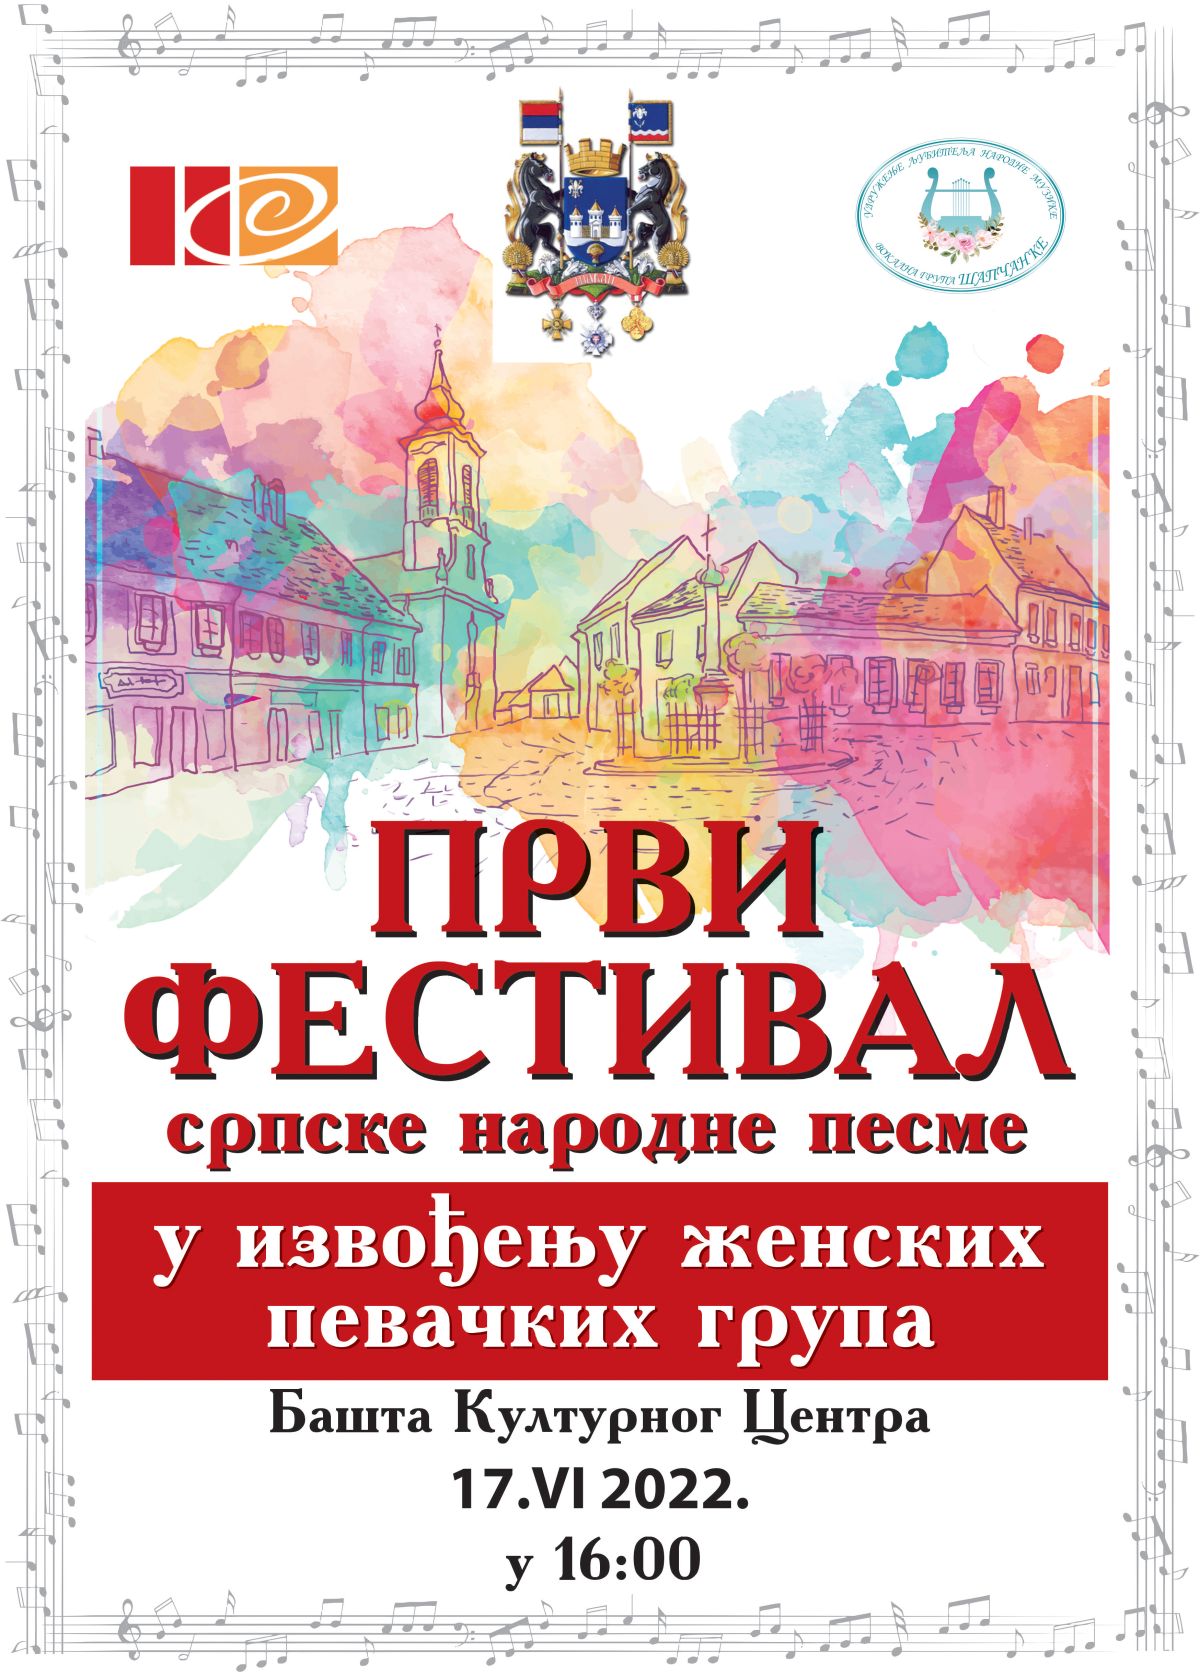 Prvi revijalni festival srpske narodne pesme